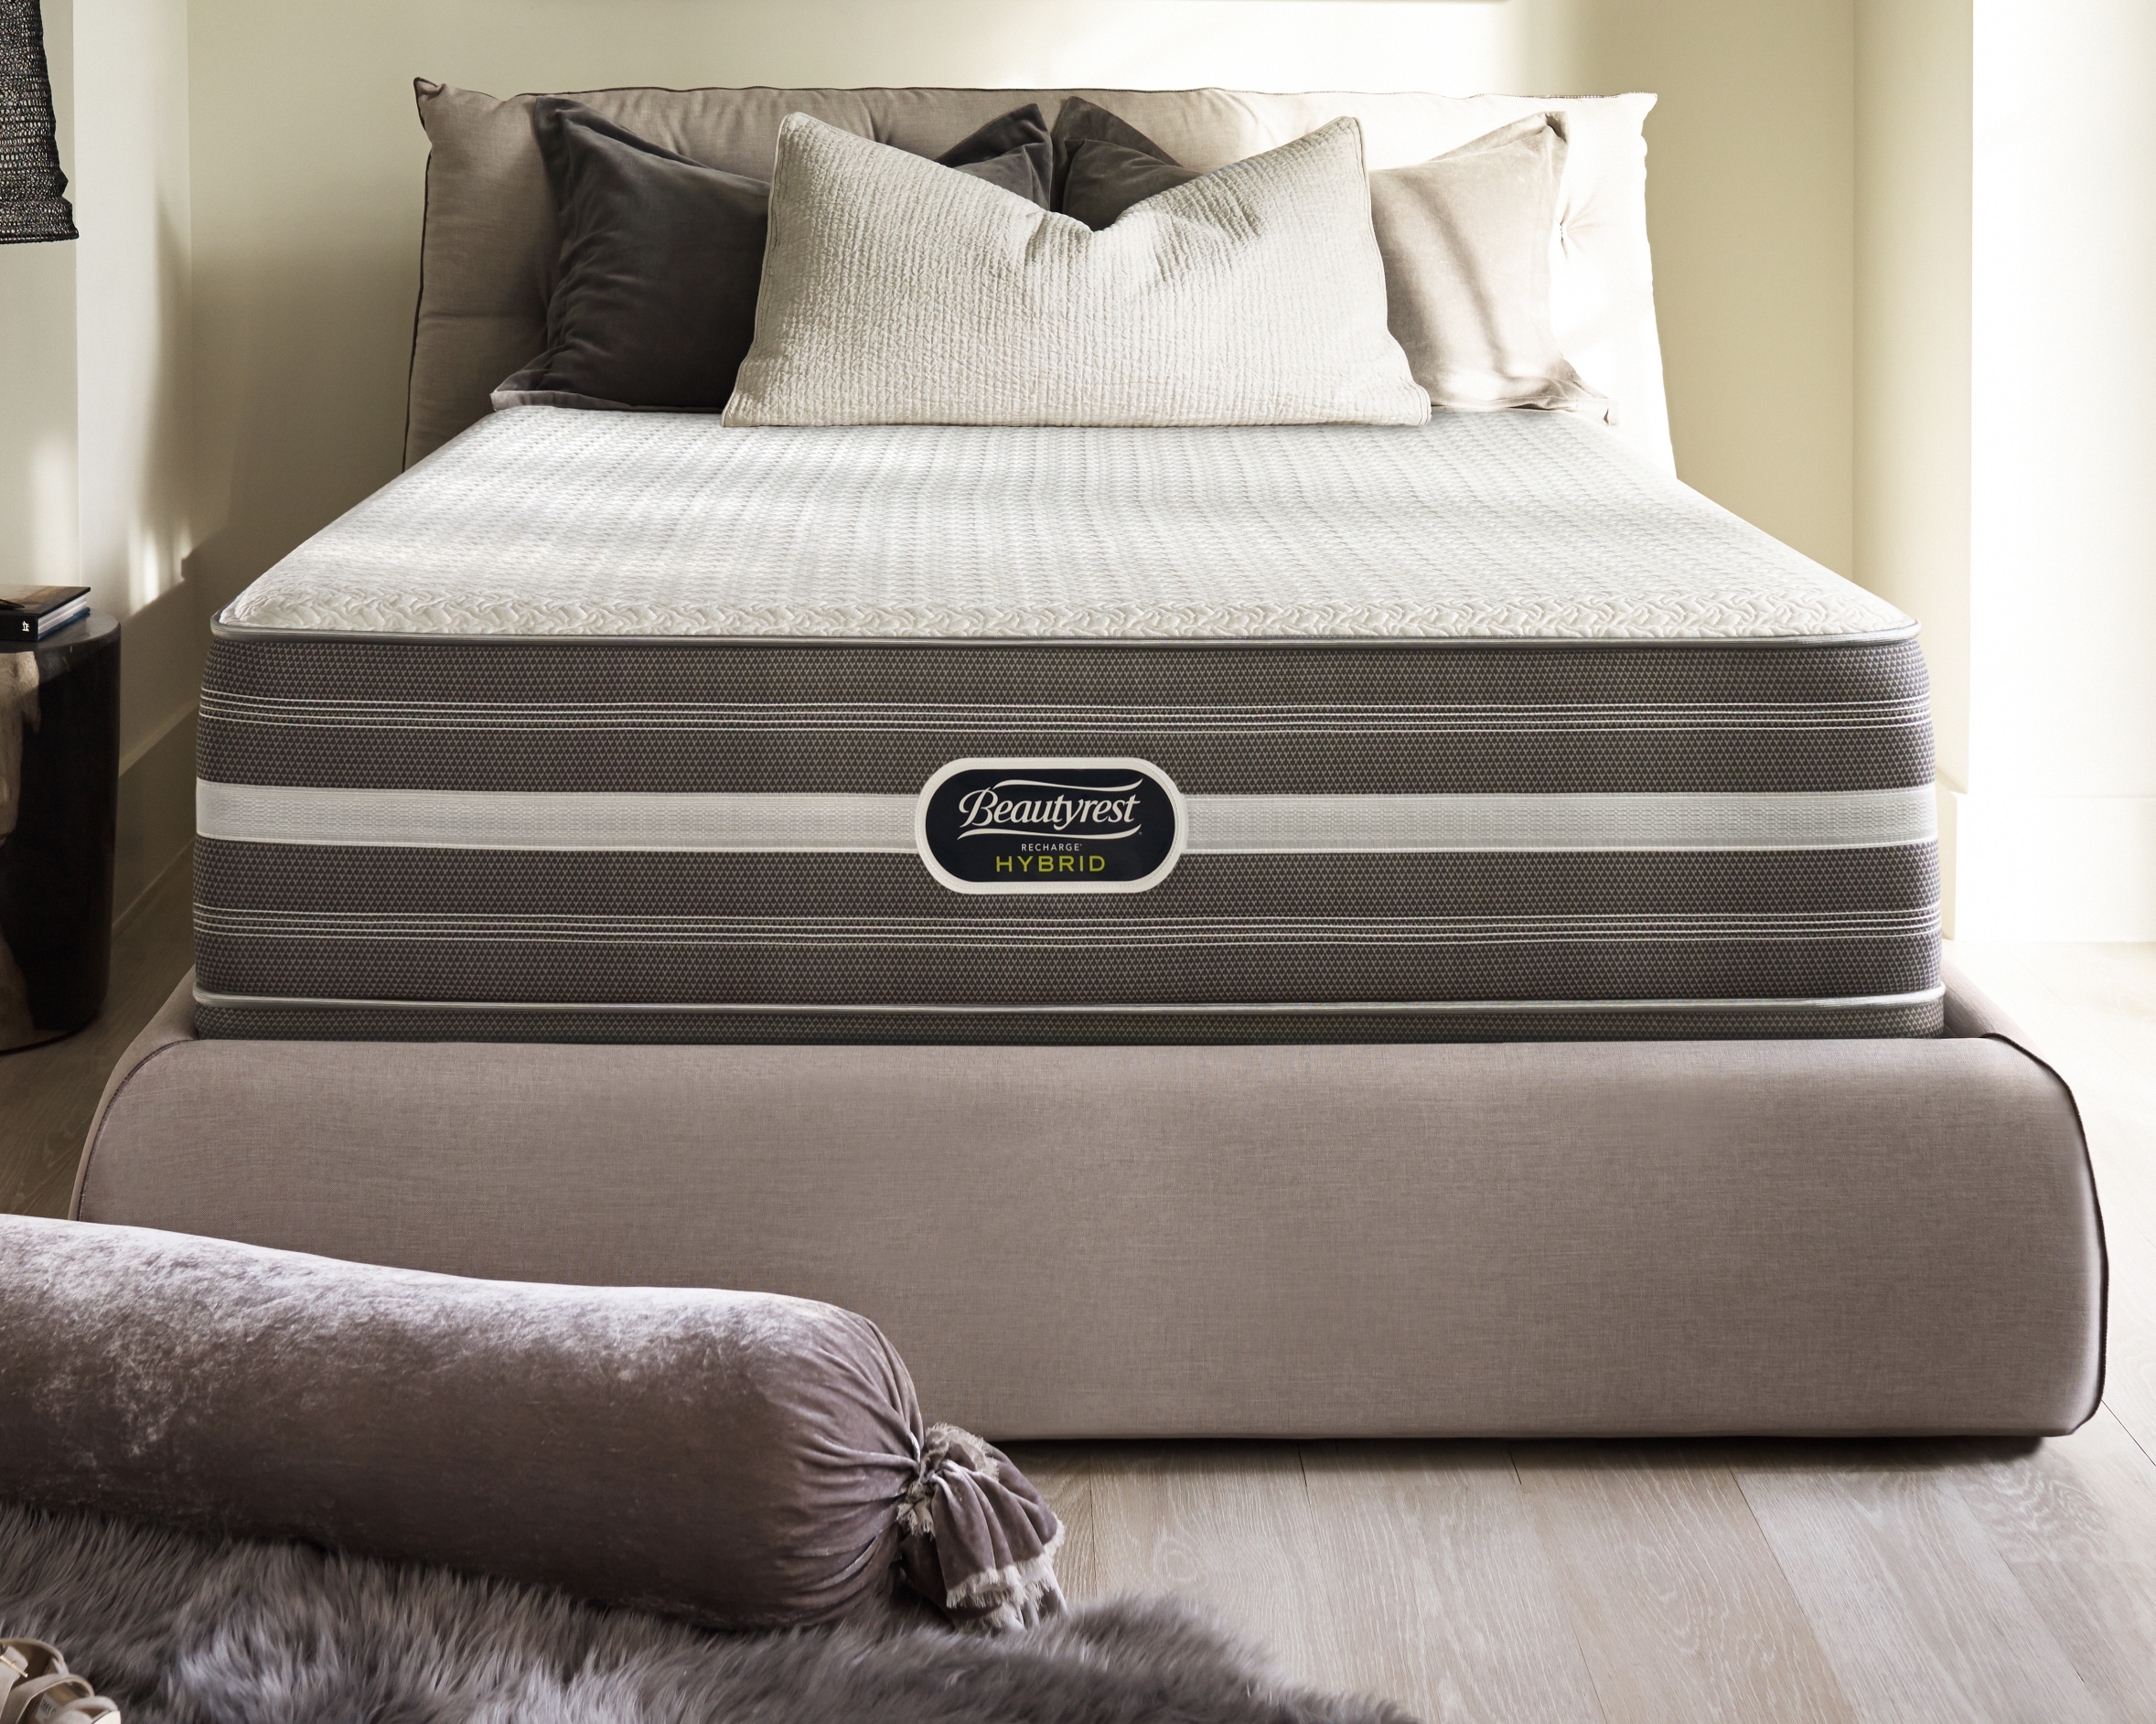 beautyrest recharge warranty mattress firm